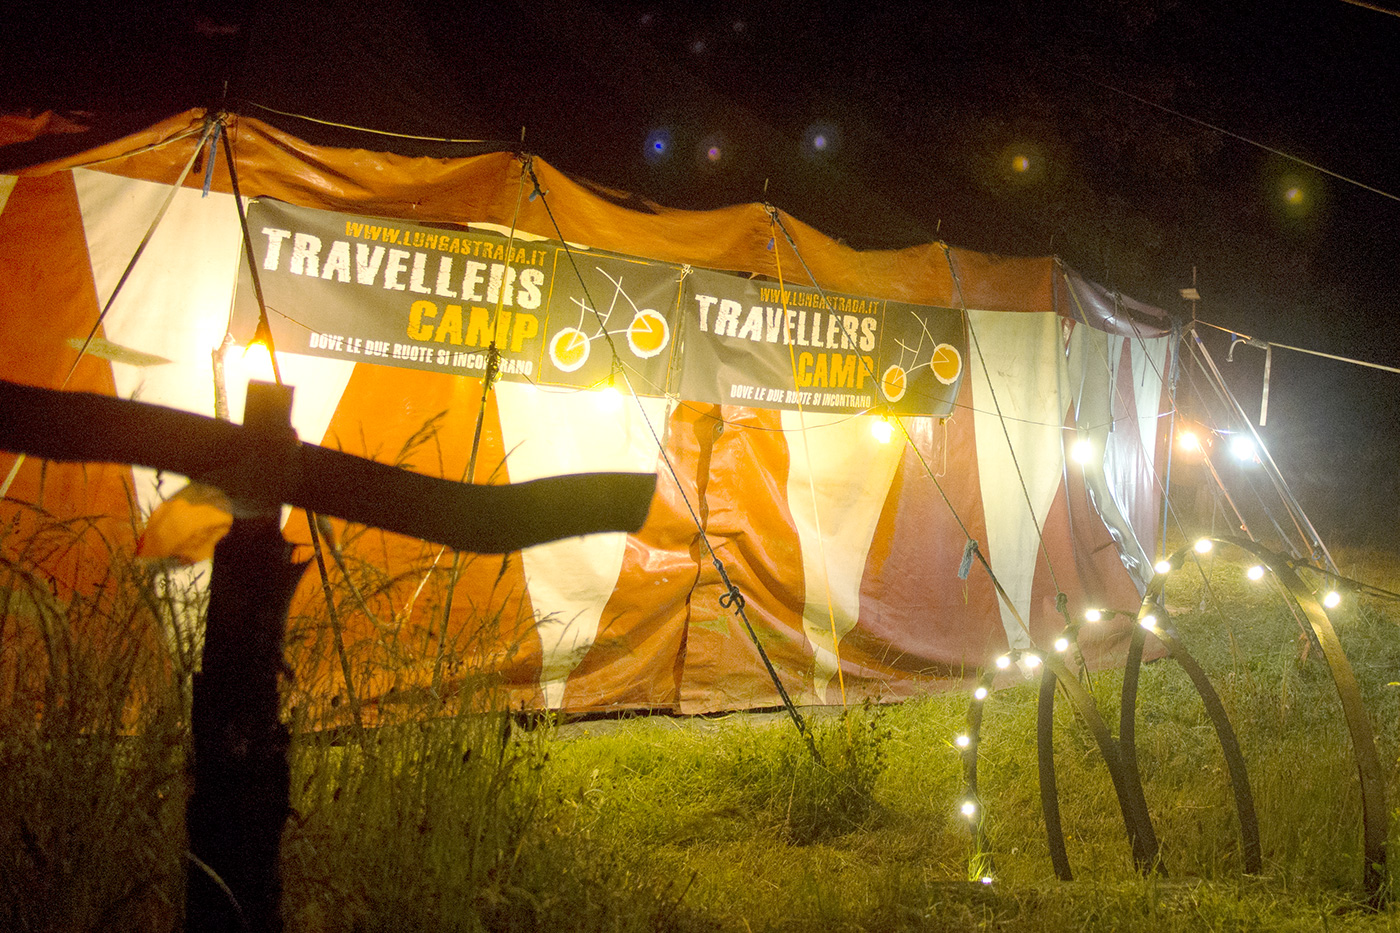 Travellers Camp 2016, le presentazioni dei viaggiatori nel tendone